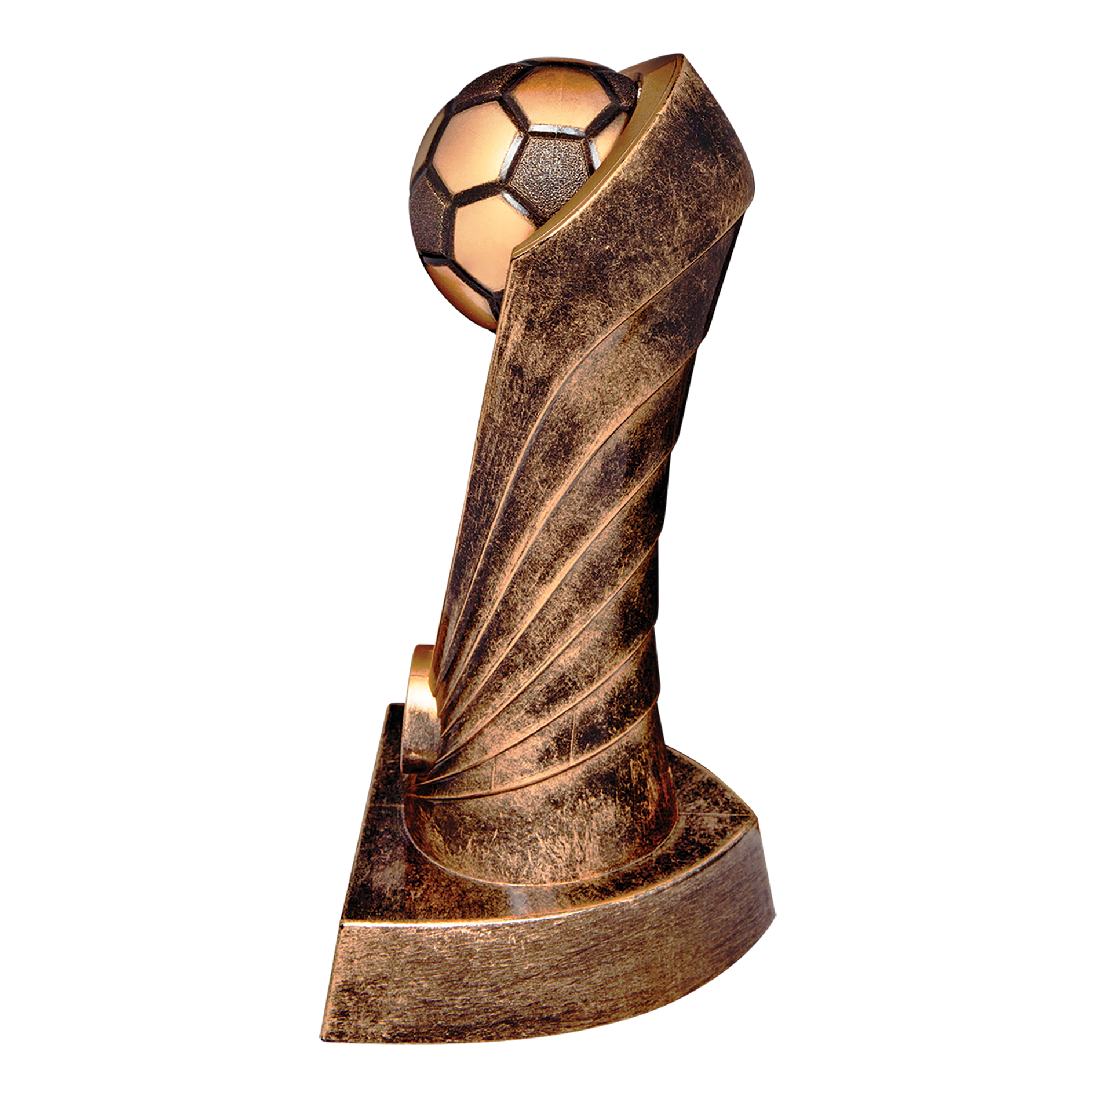 Soccer Cobra Award